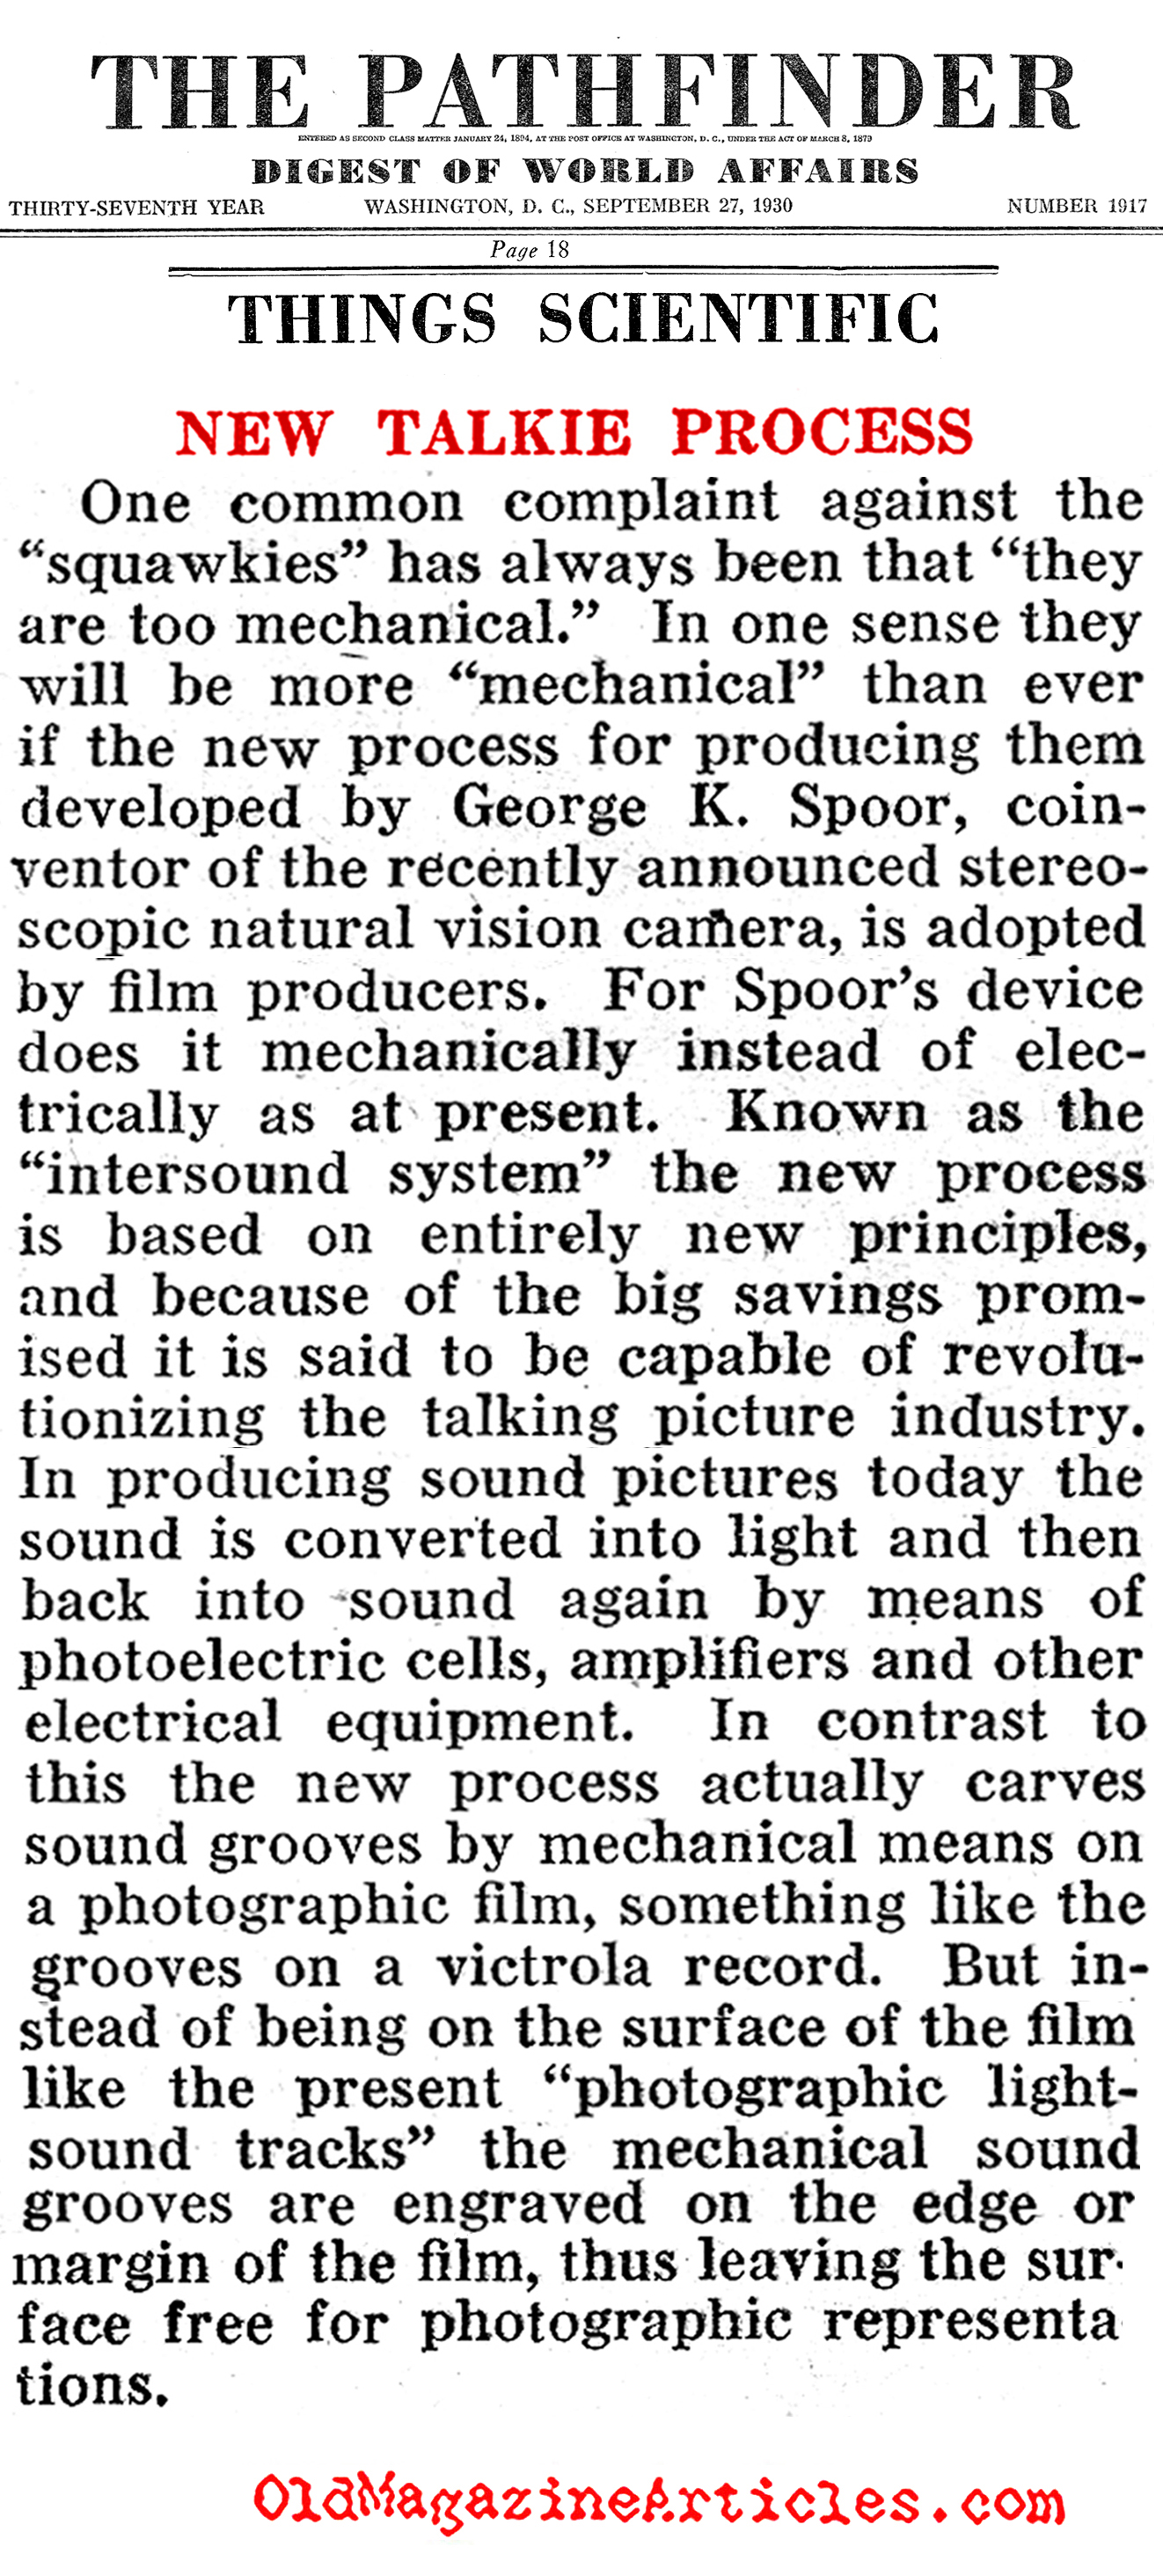 The Inter-Sound System (Pathfinder Magazine, 1930)